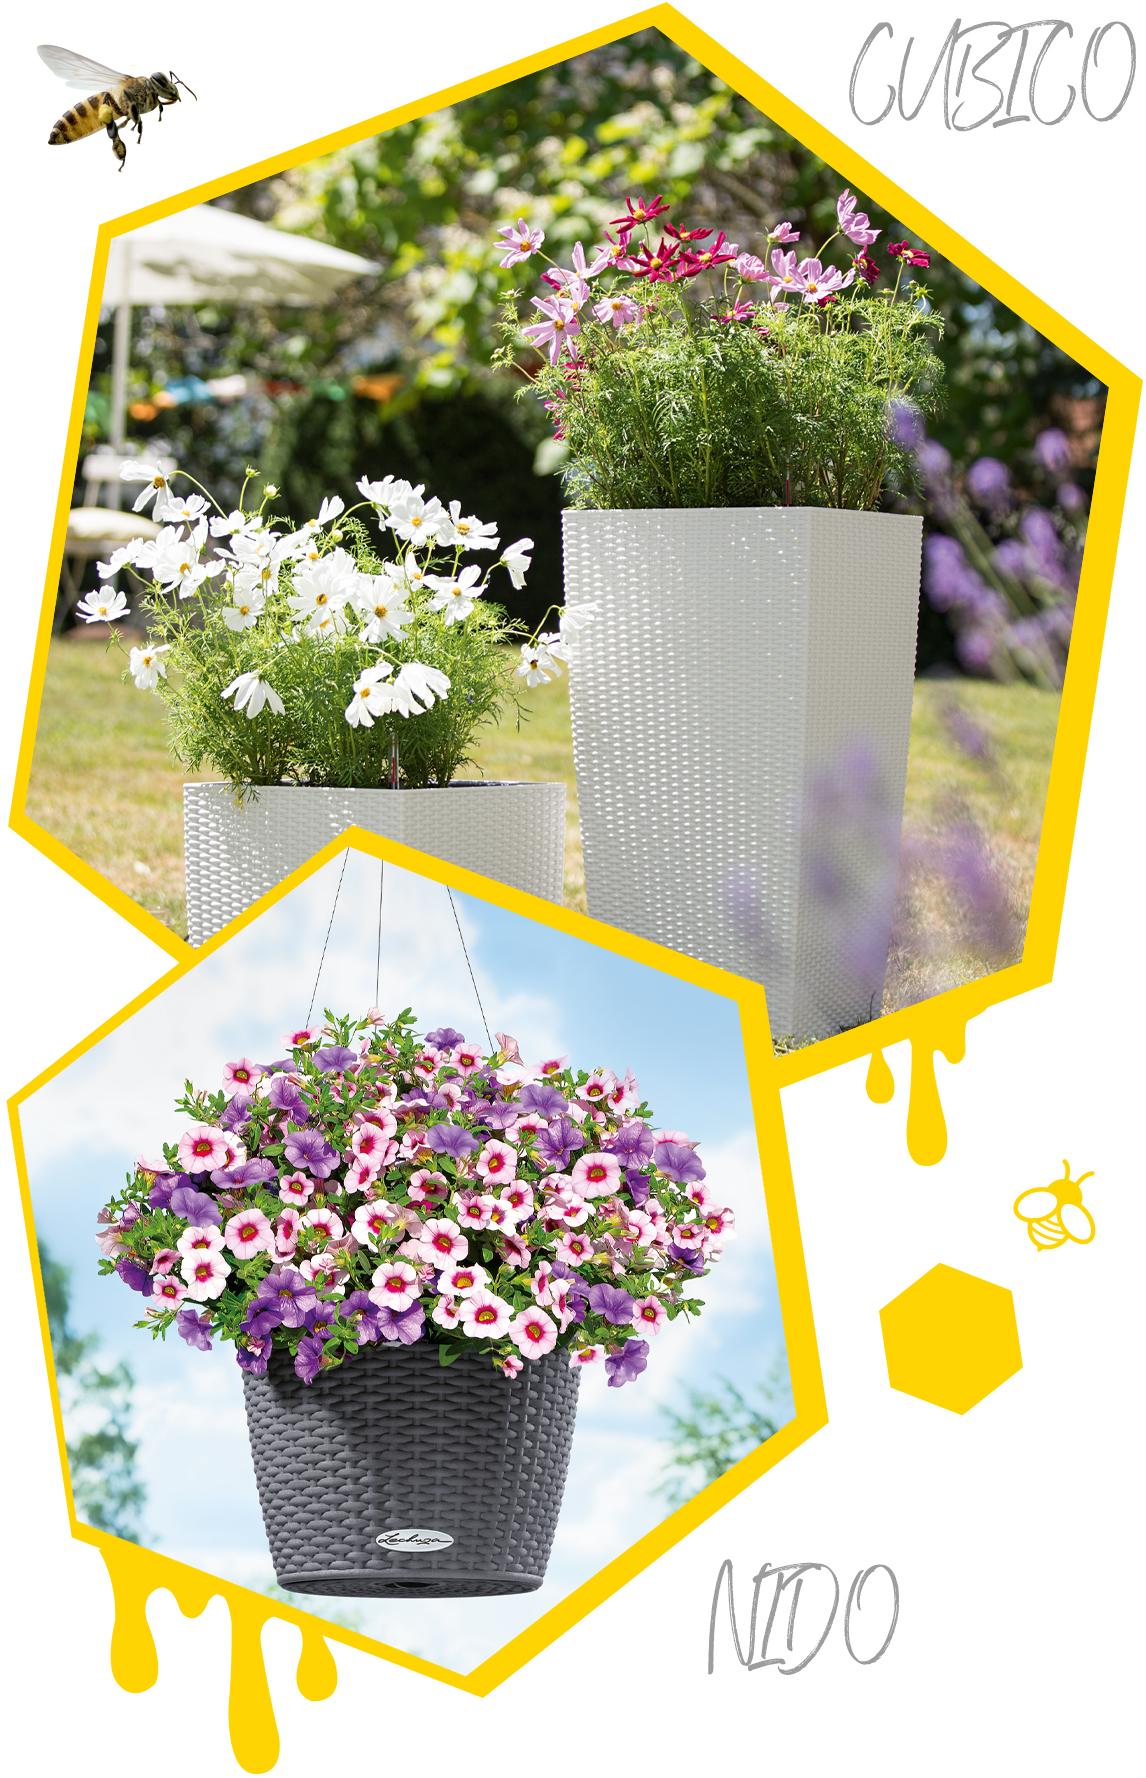 Deux alvéoles avec des pots de la gamme COTTAGE plantés de fleurs d'été.